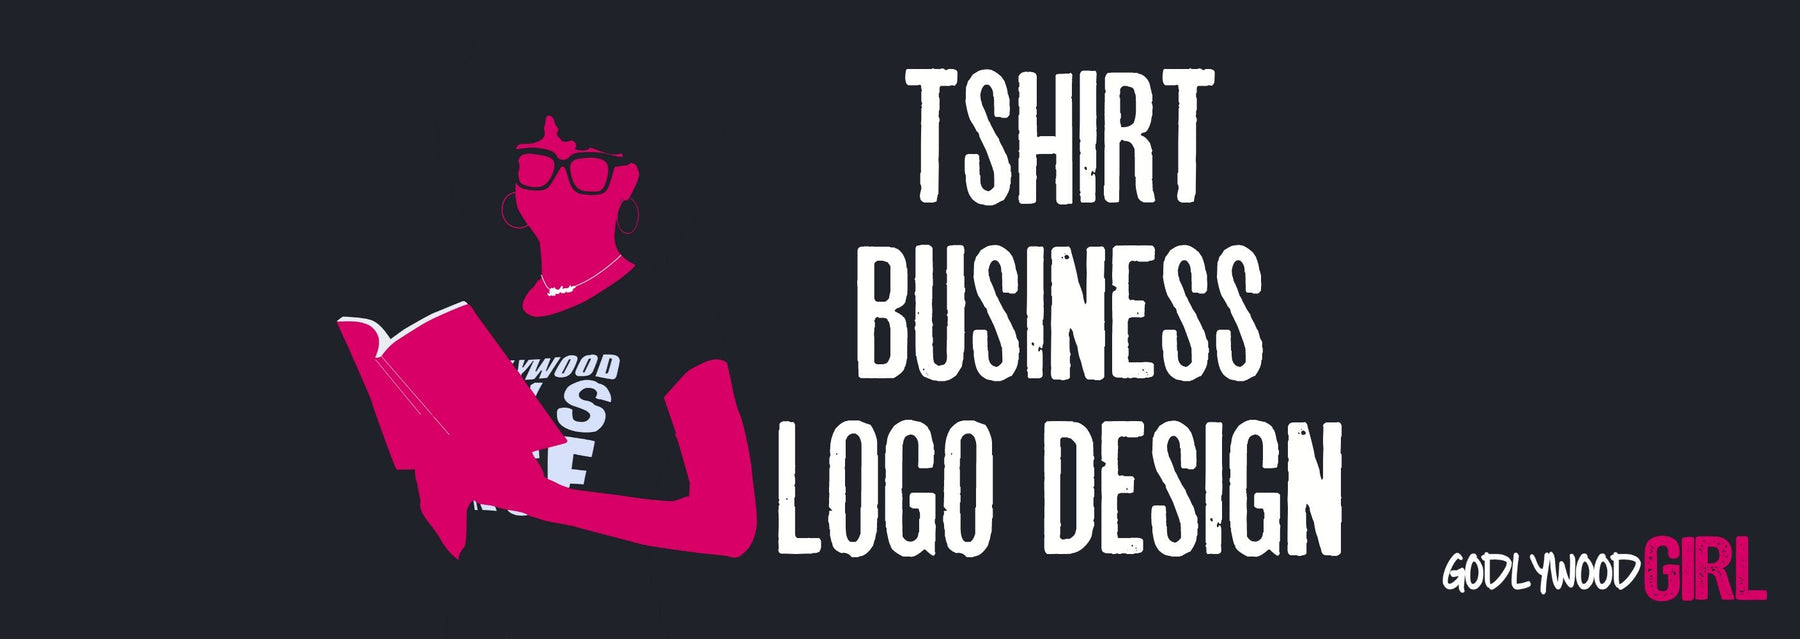 LOGO MAKER (Create A Logo For Your T-Shirt Business Using Logo Maker) | Christian Entrepreneur